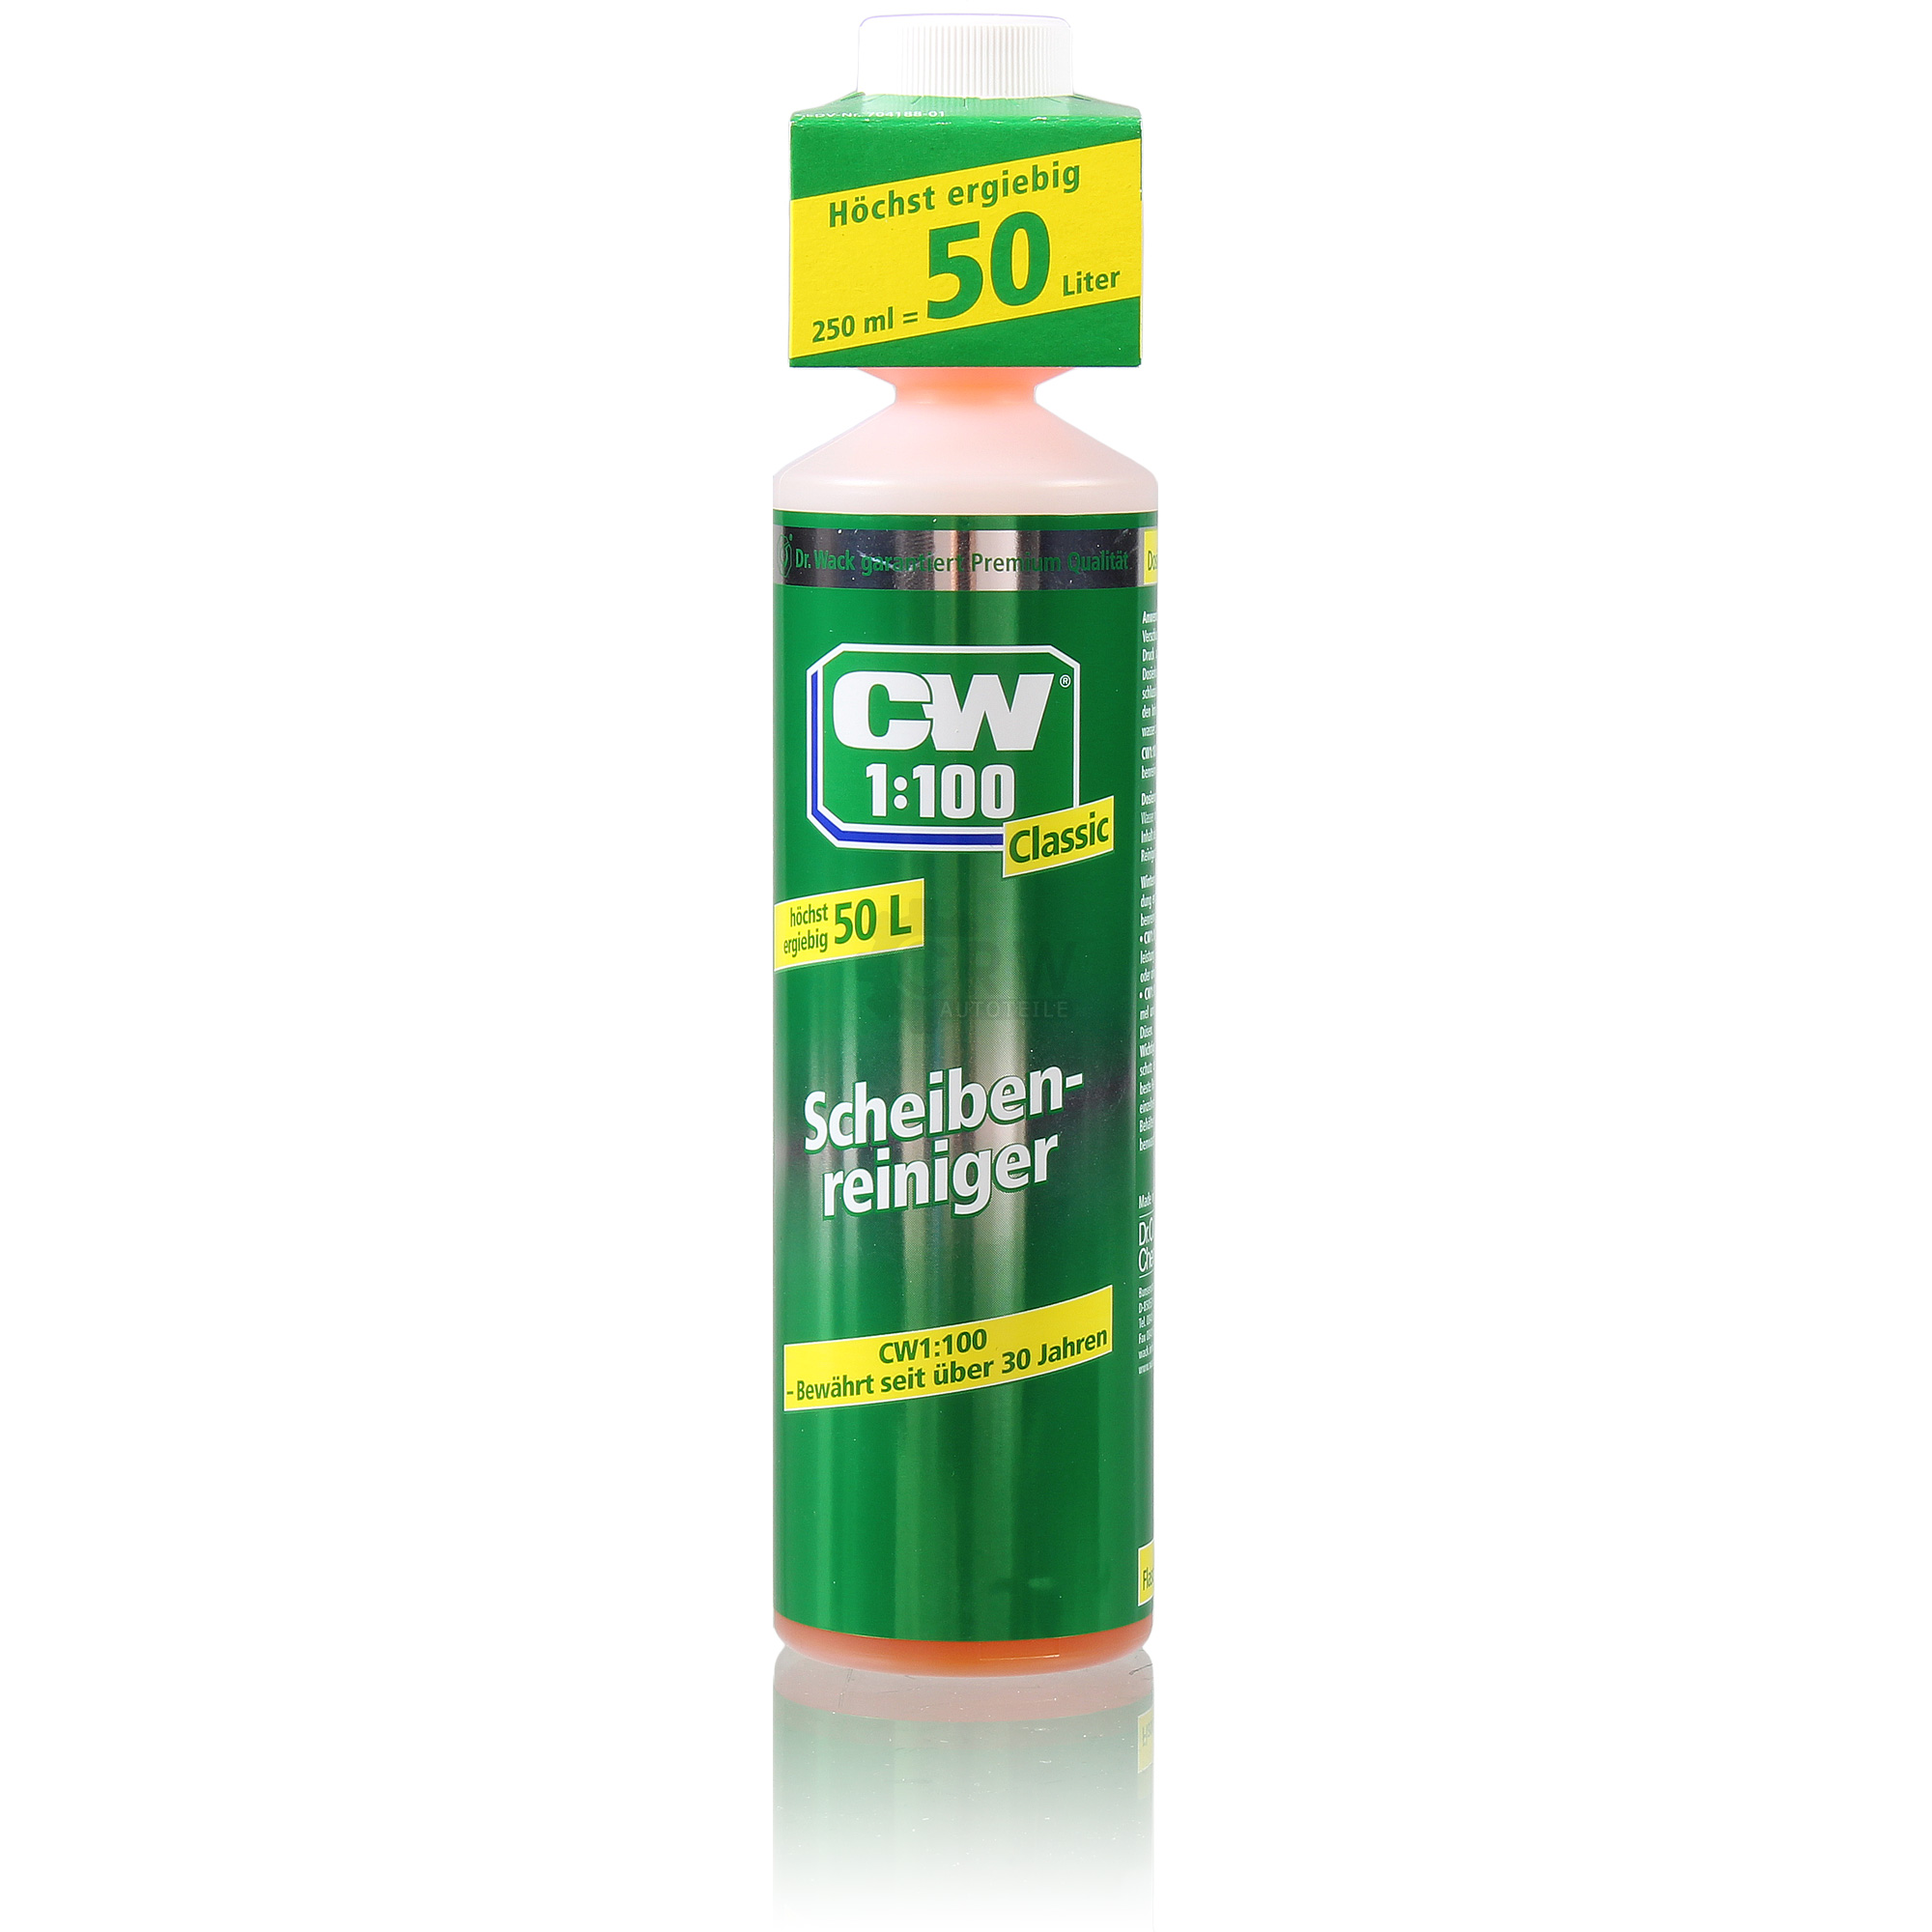 Dr. Wack CW1:100 Classic Scheibenreiniger 250 ml Konzentrant ergibt 50l Reiniger